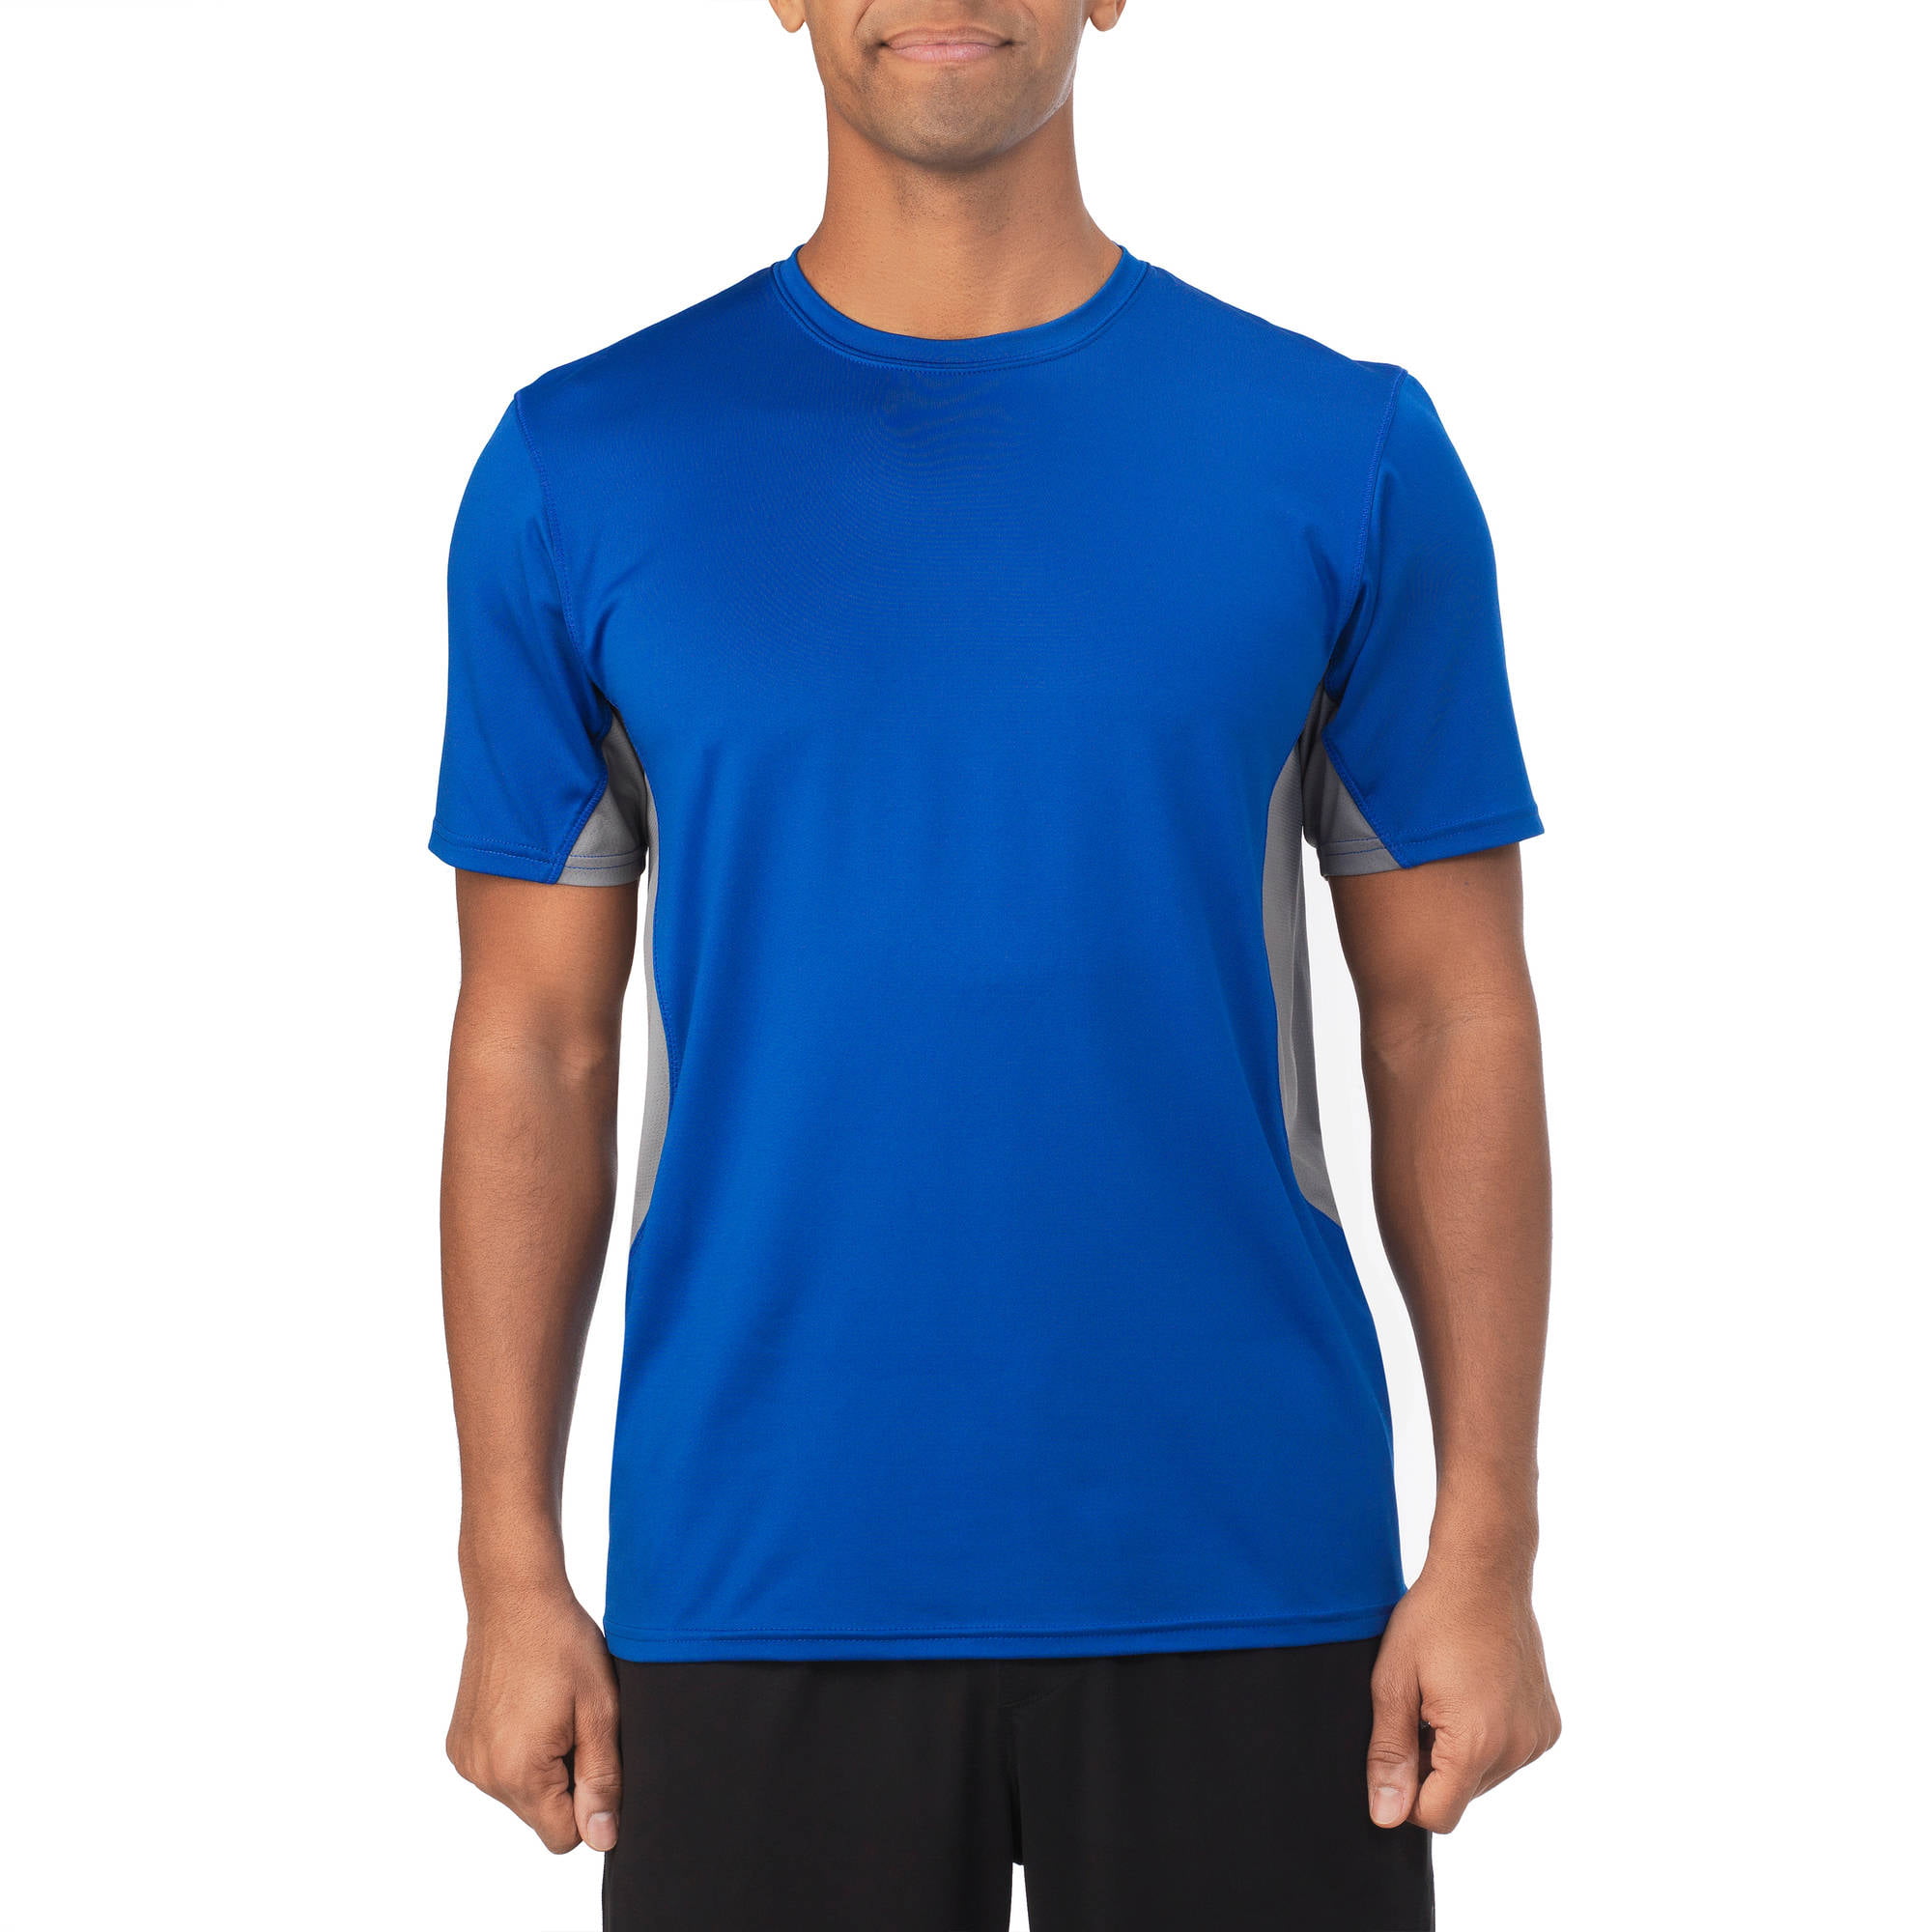 men's coolforce performance short sleeve t-shirt - Walmart.com